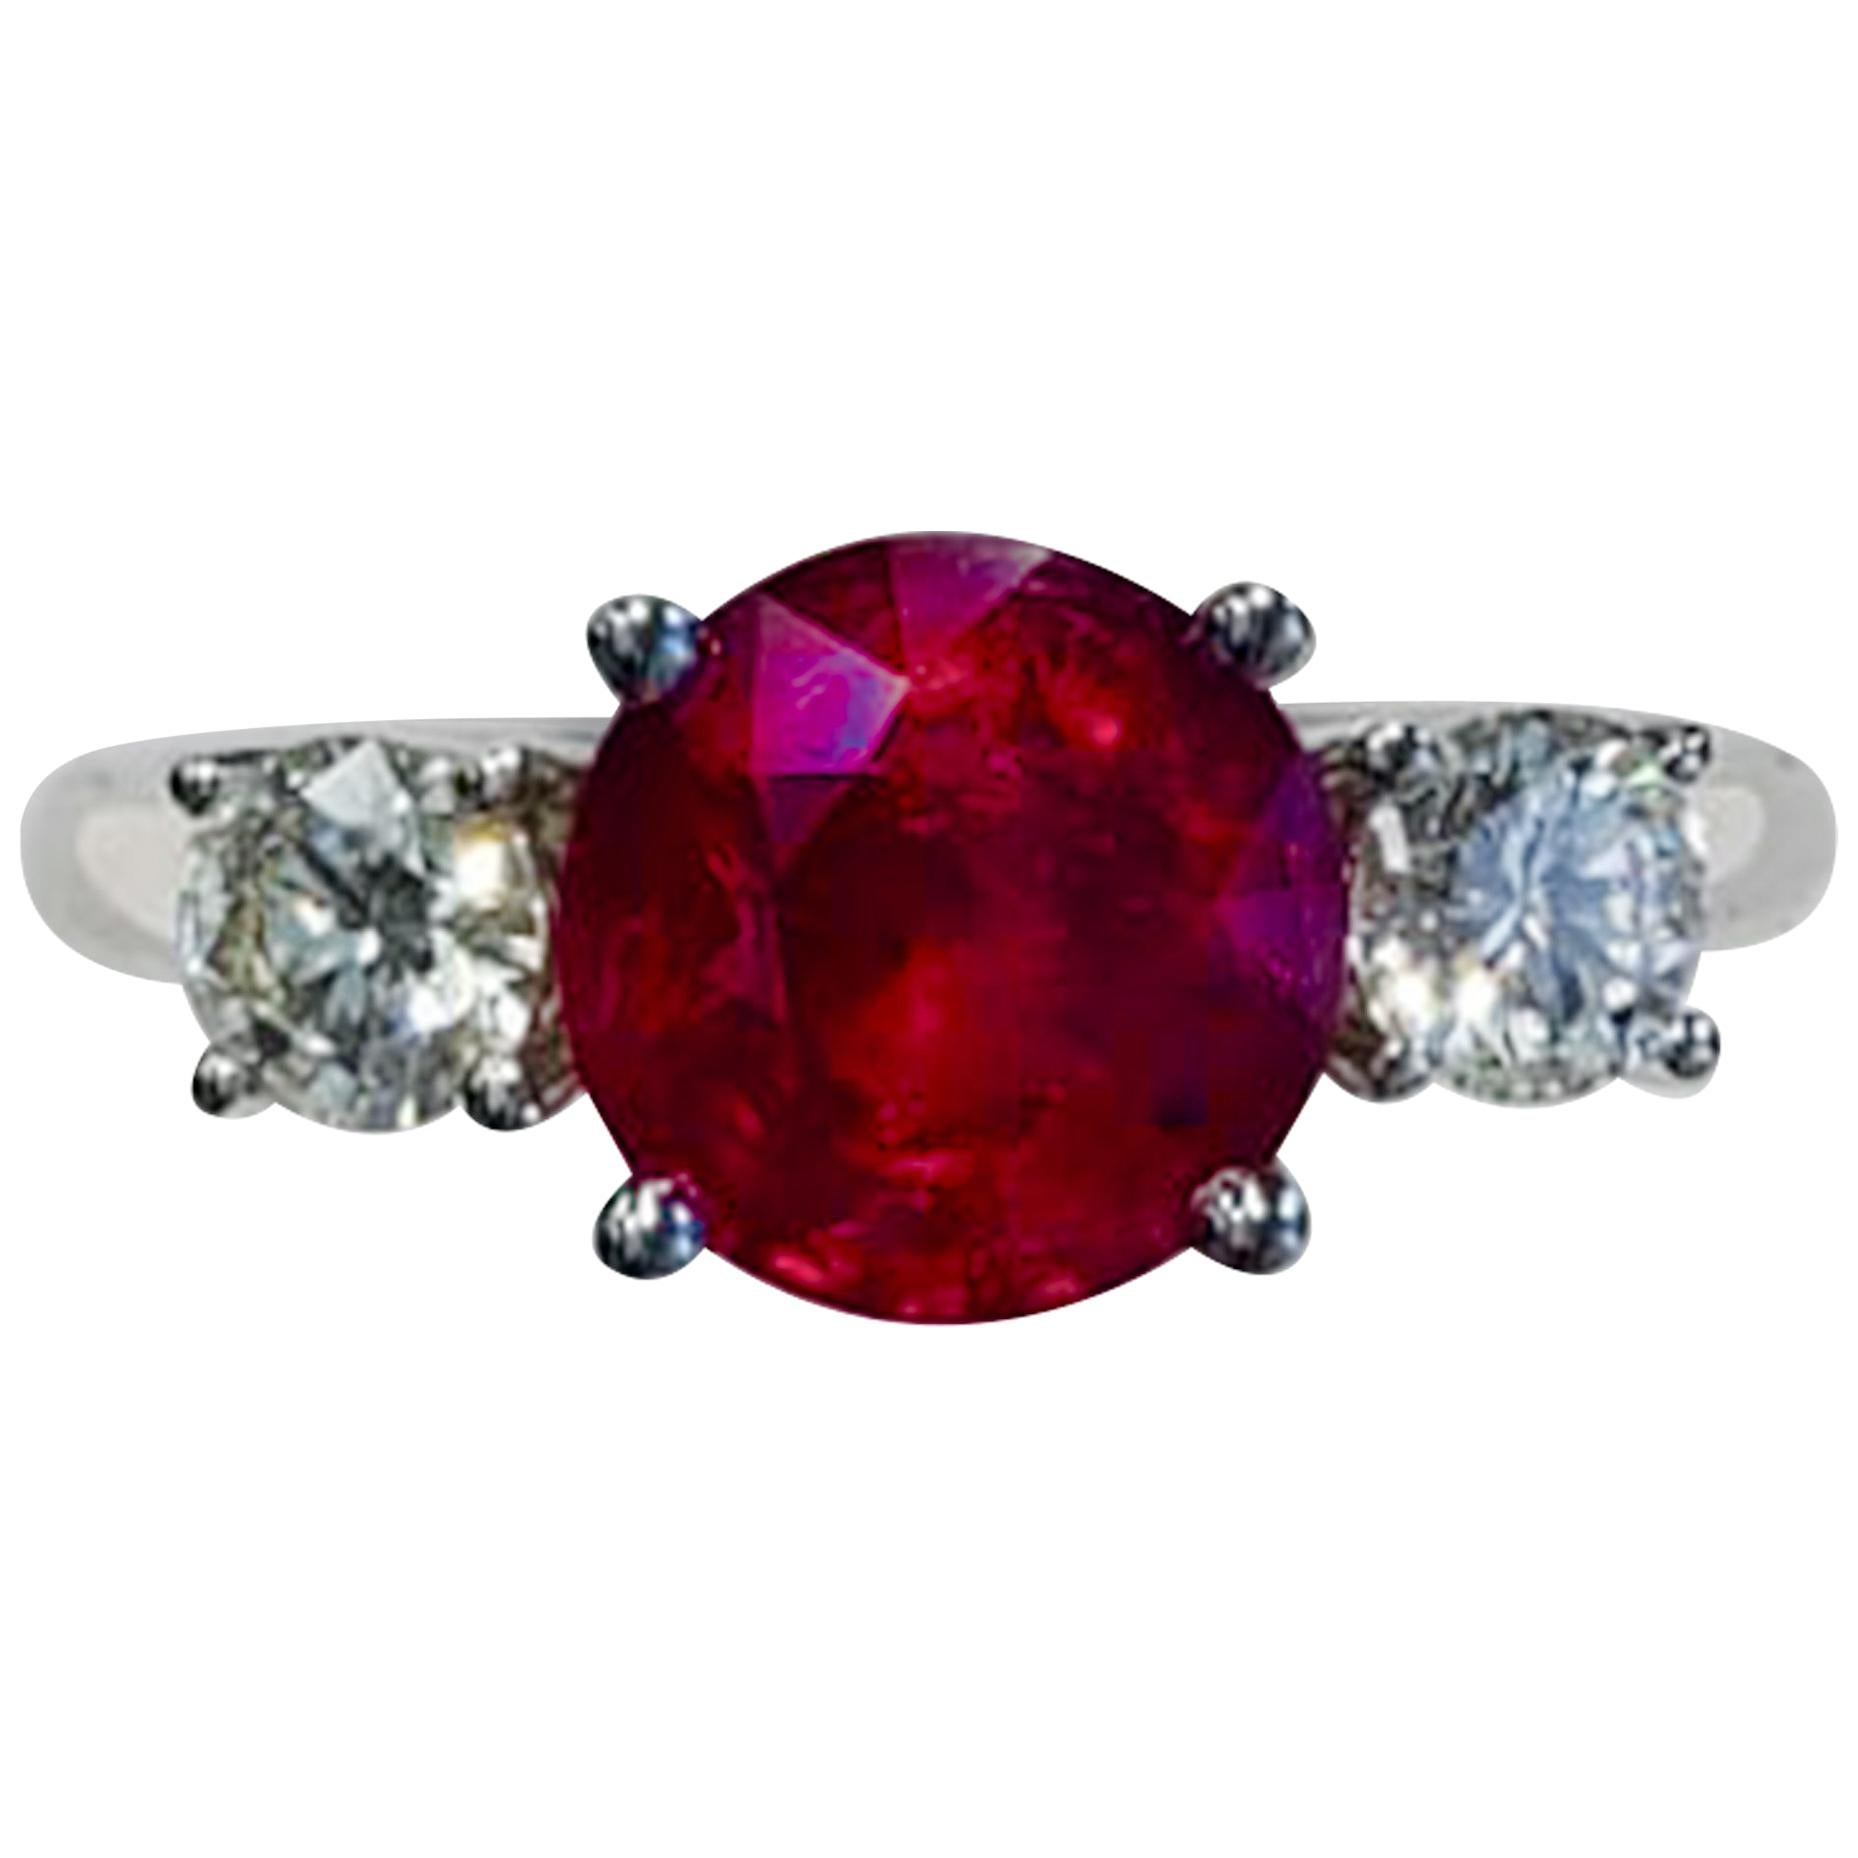 3 Stone Round Ruby Fashion Ring with White Diamonds